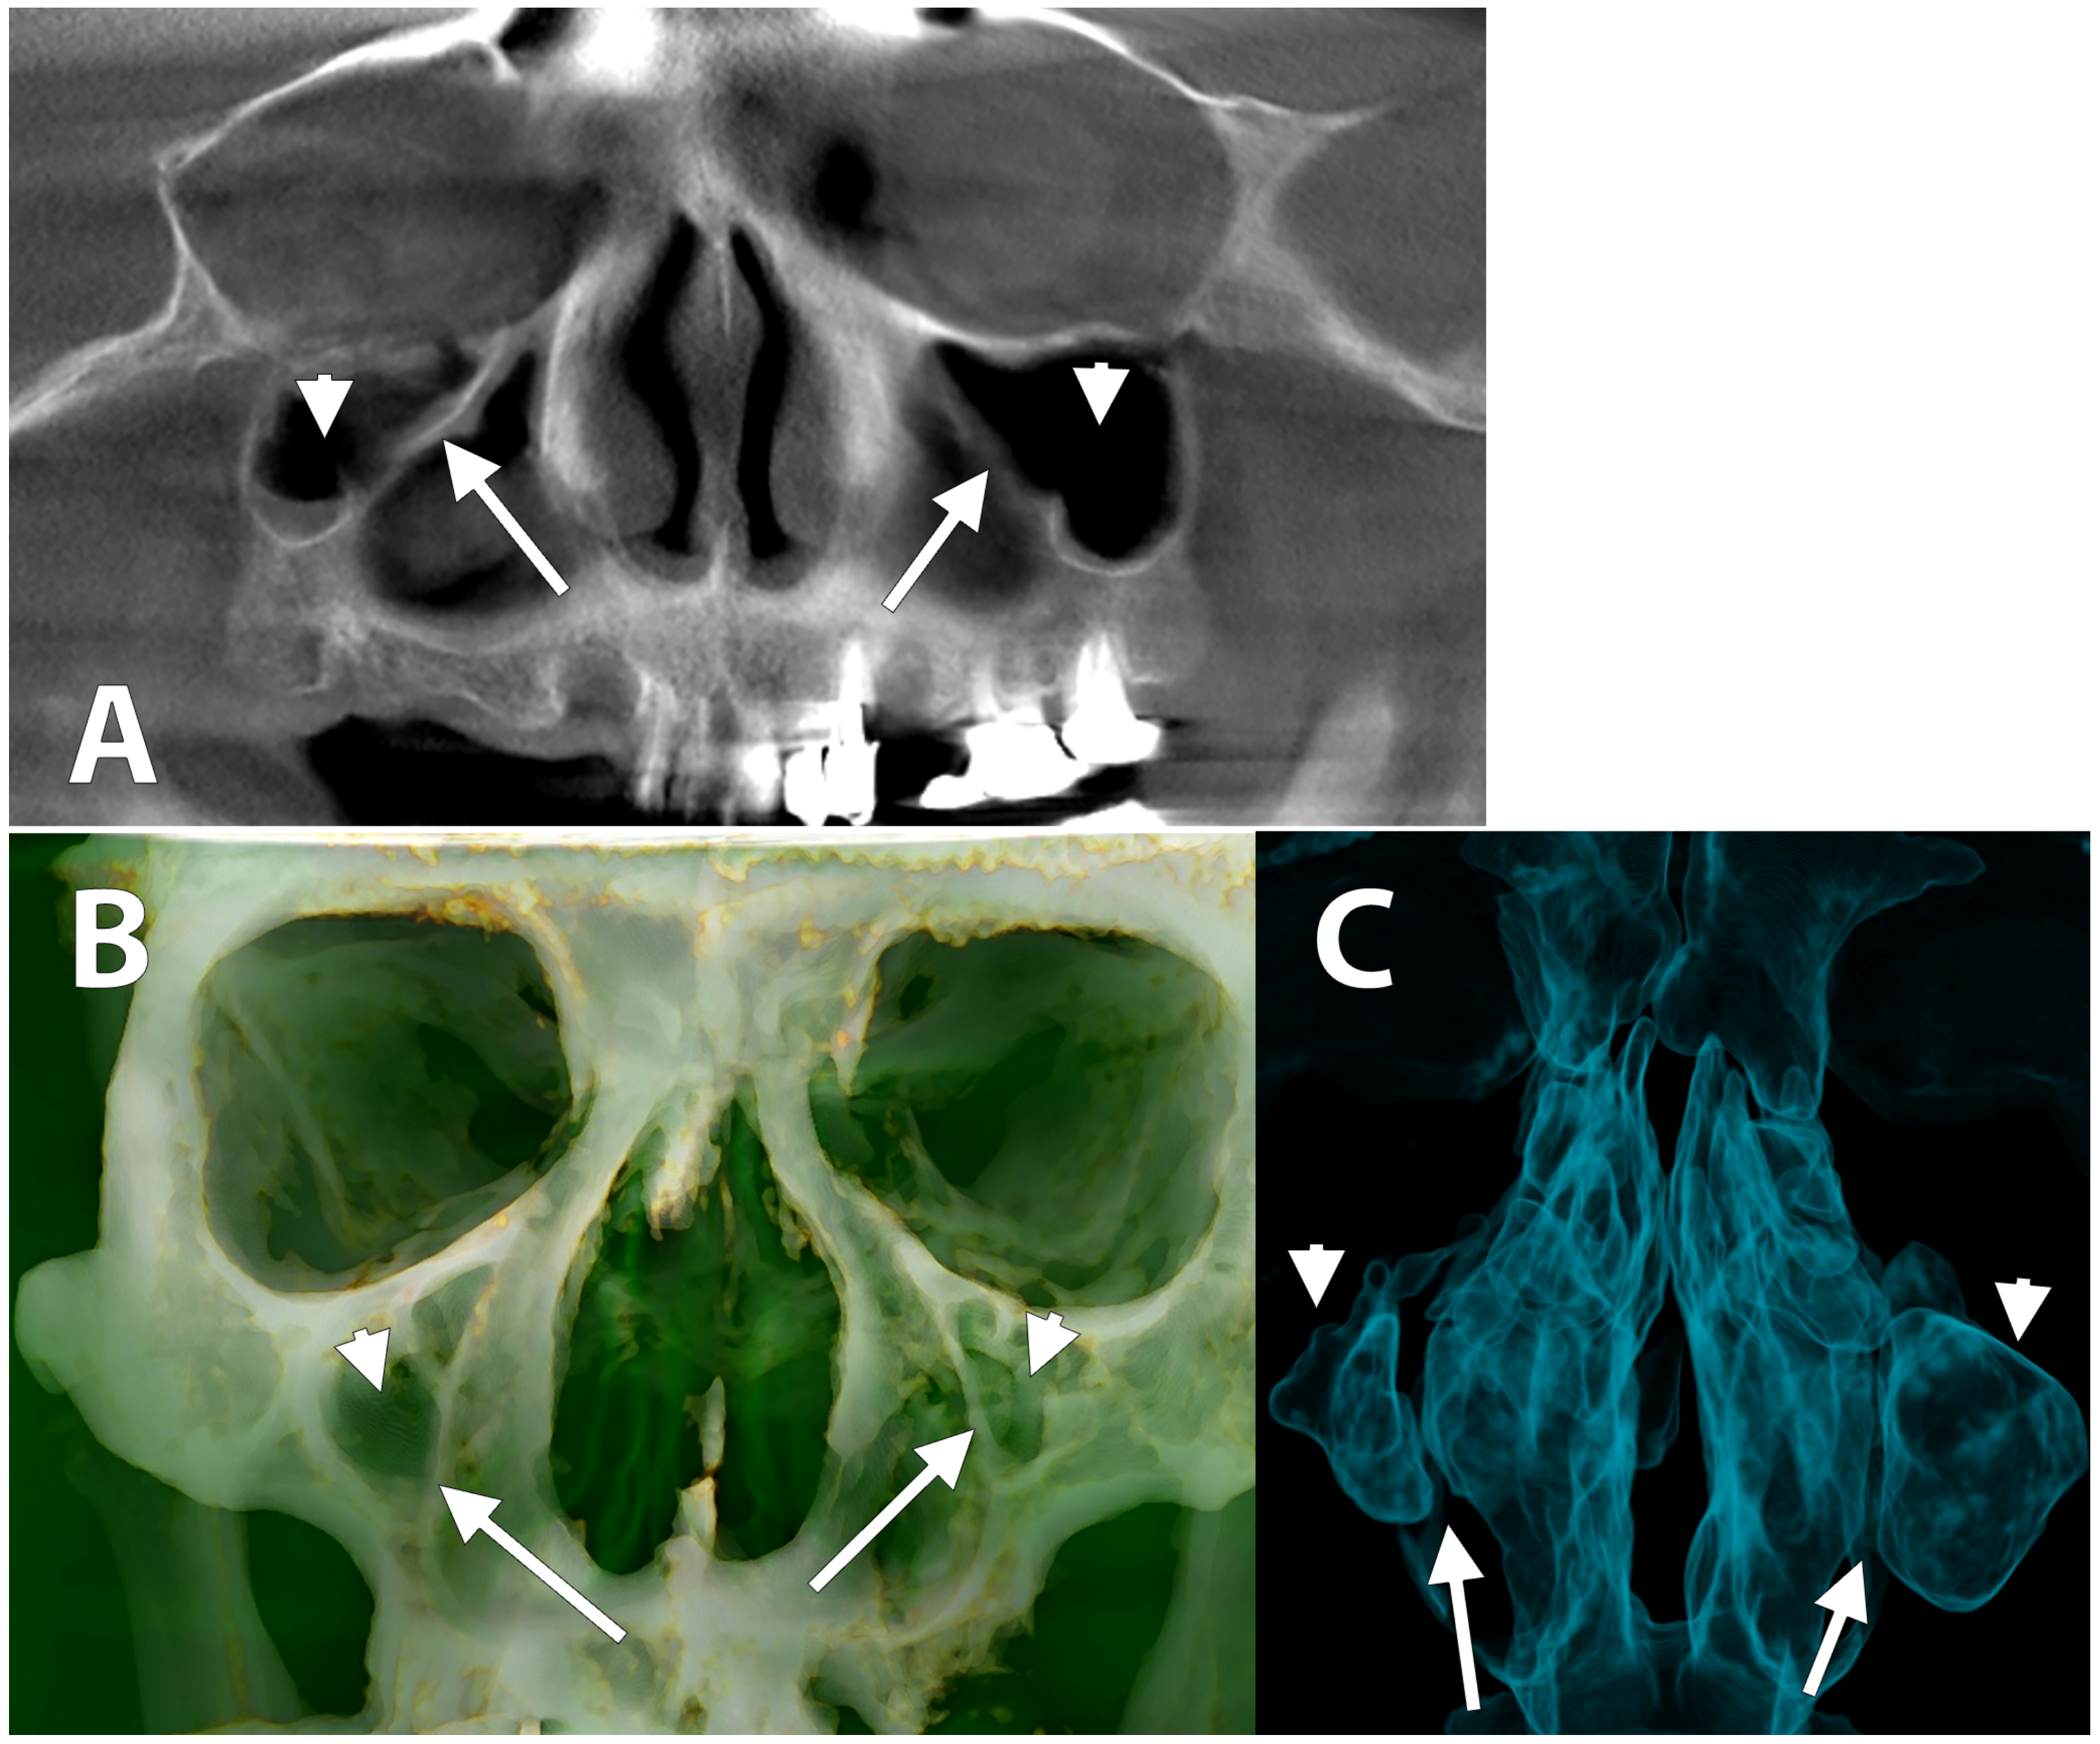 maxillary sinus skull